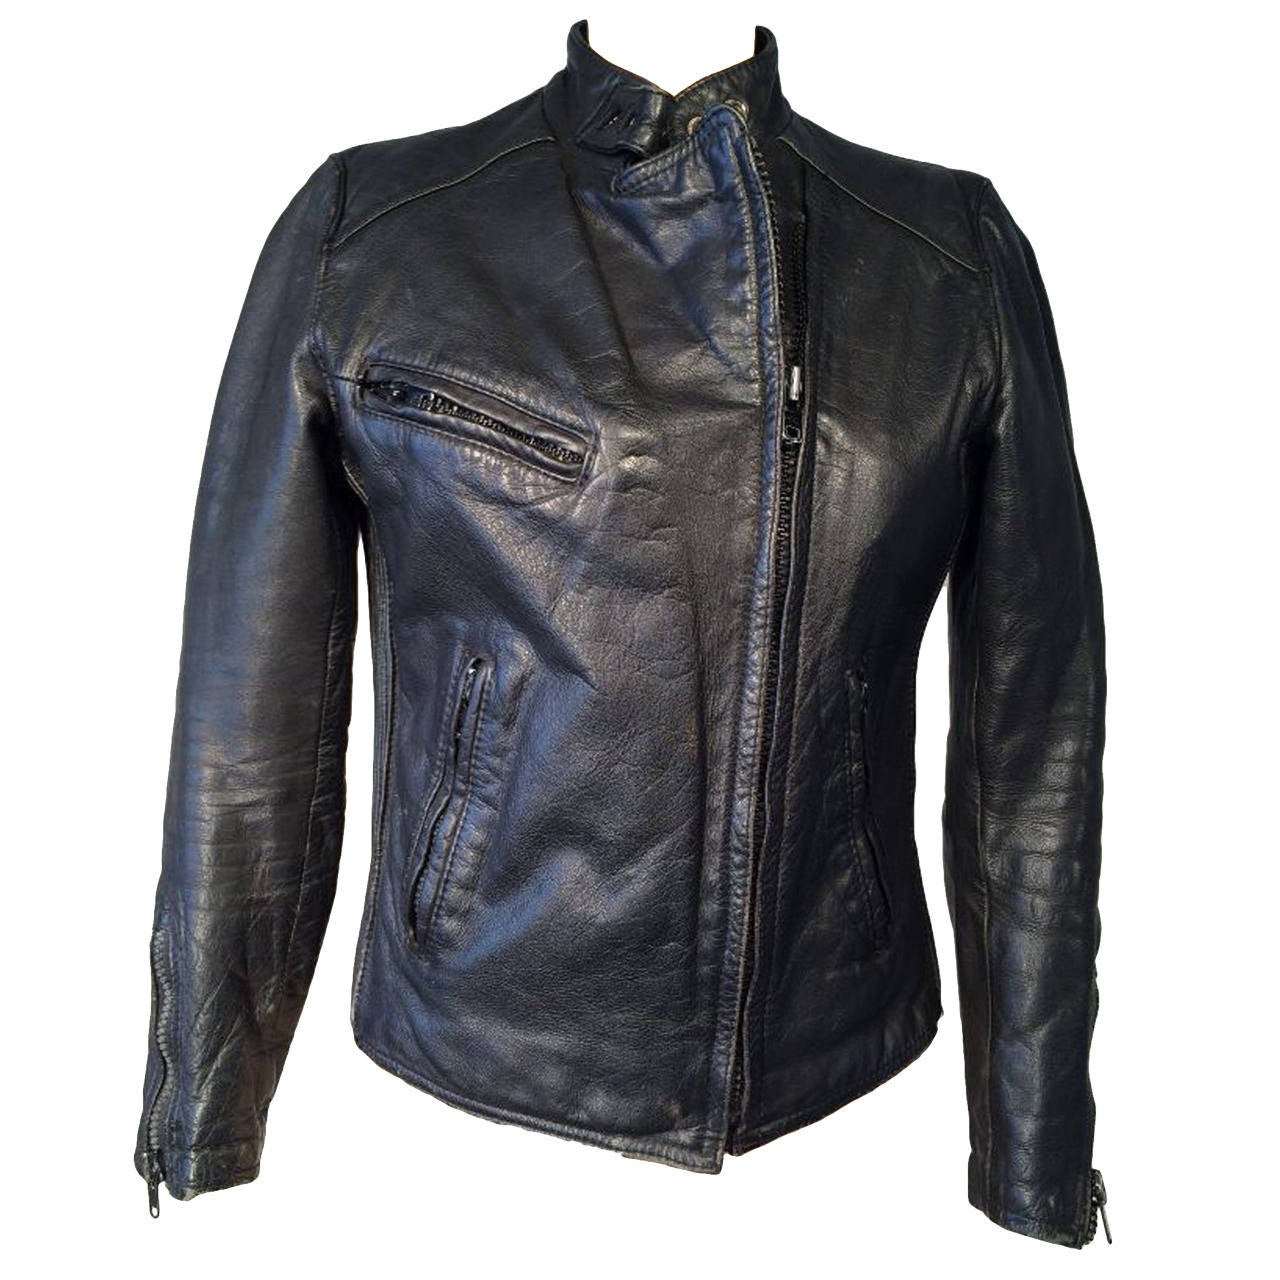 AMF/Harley-Davidson Leather Cafe Racer Biker Jacket 1970s